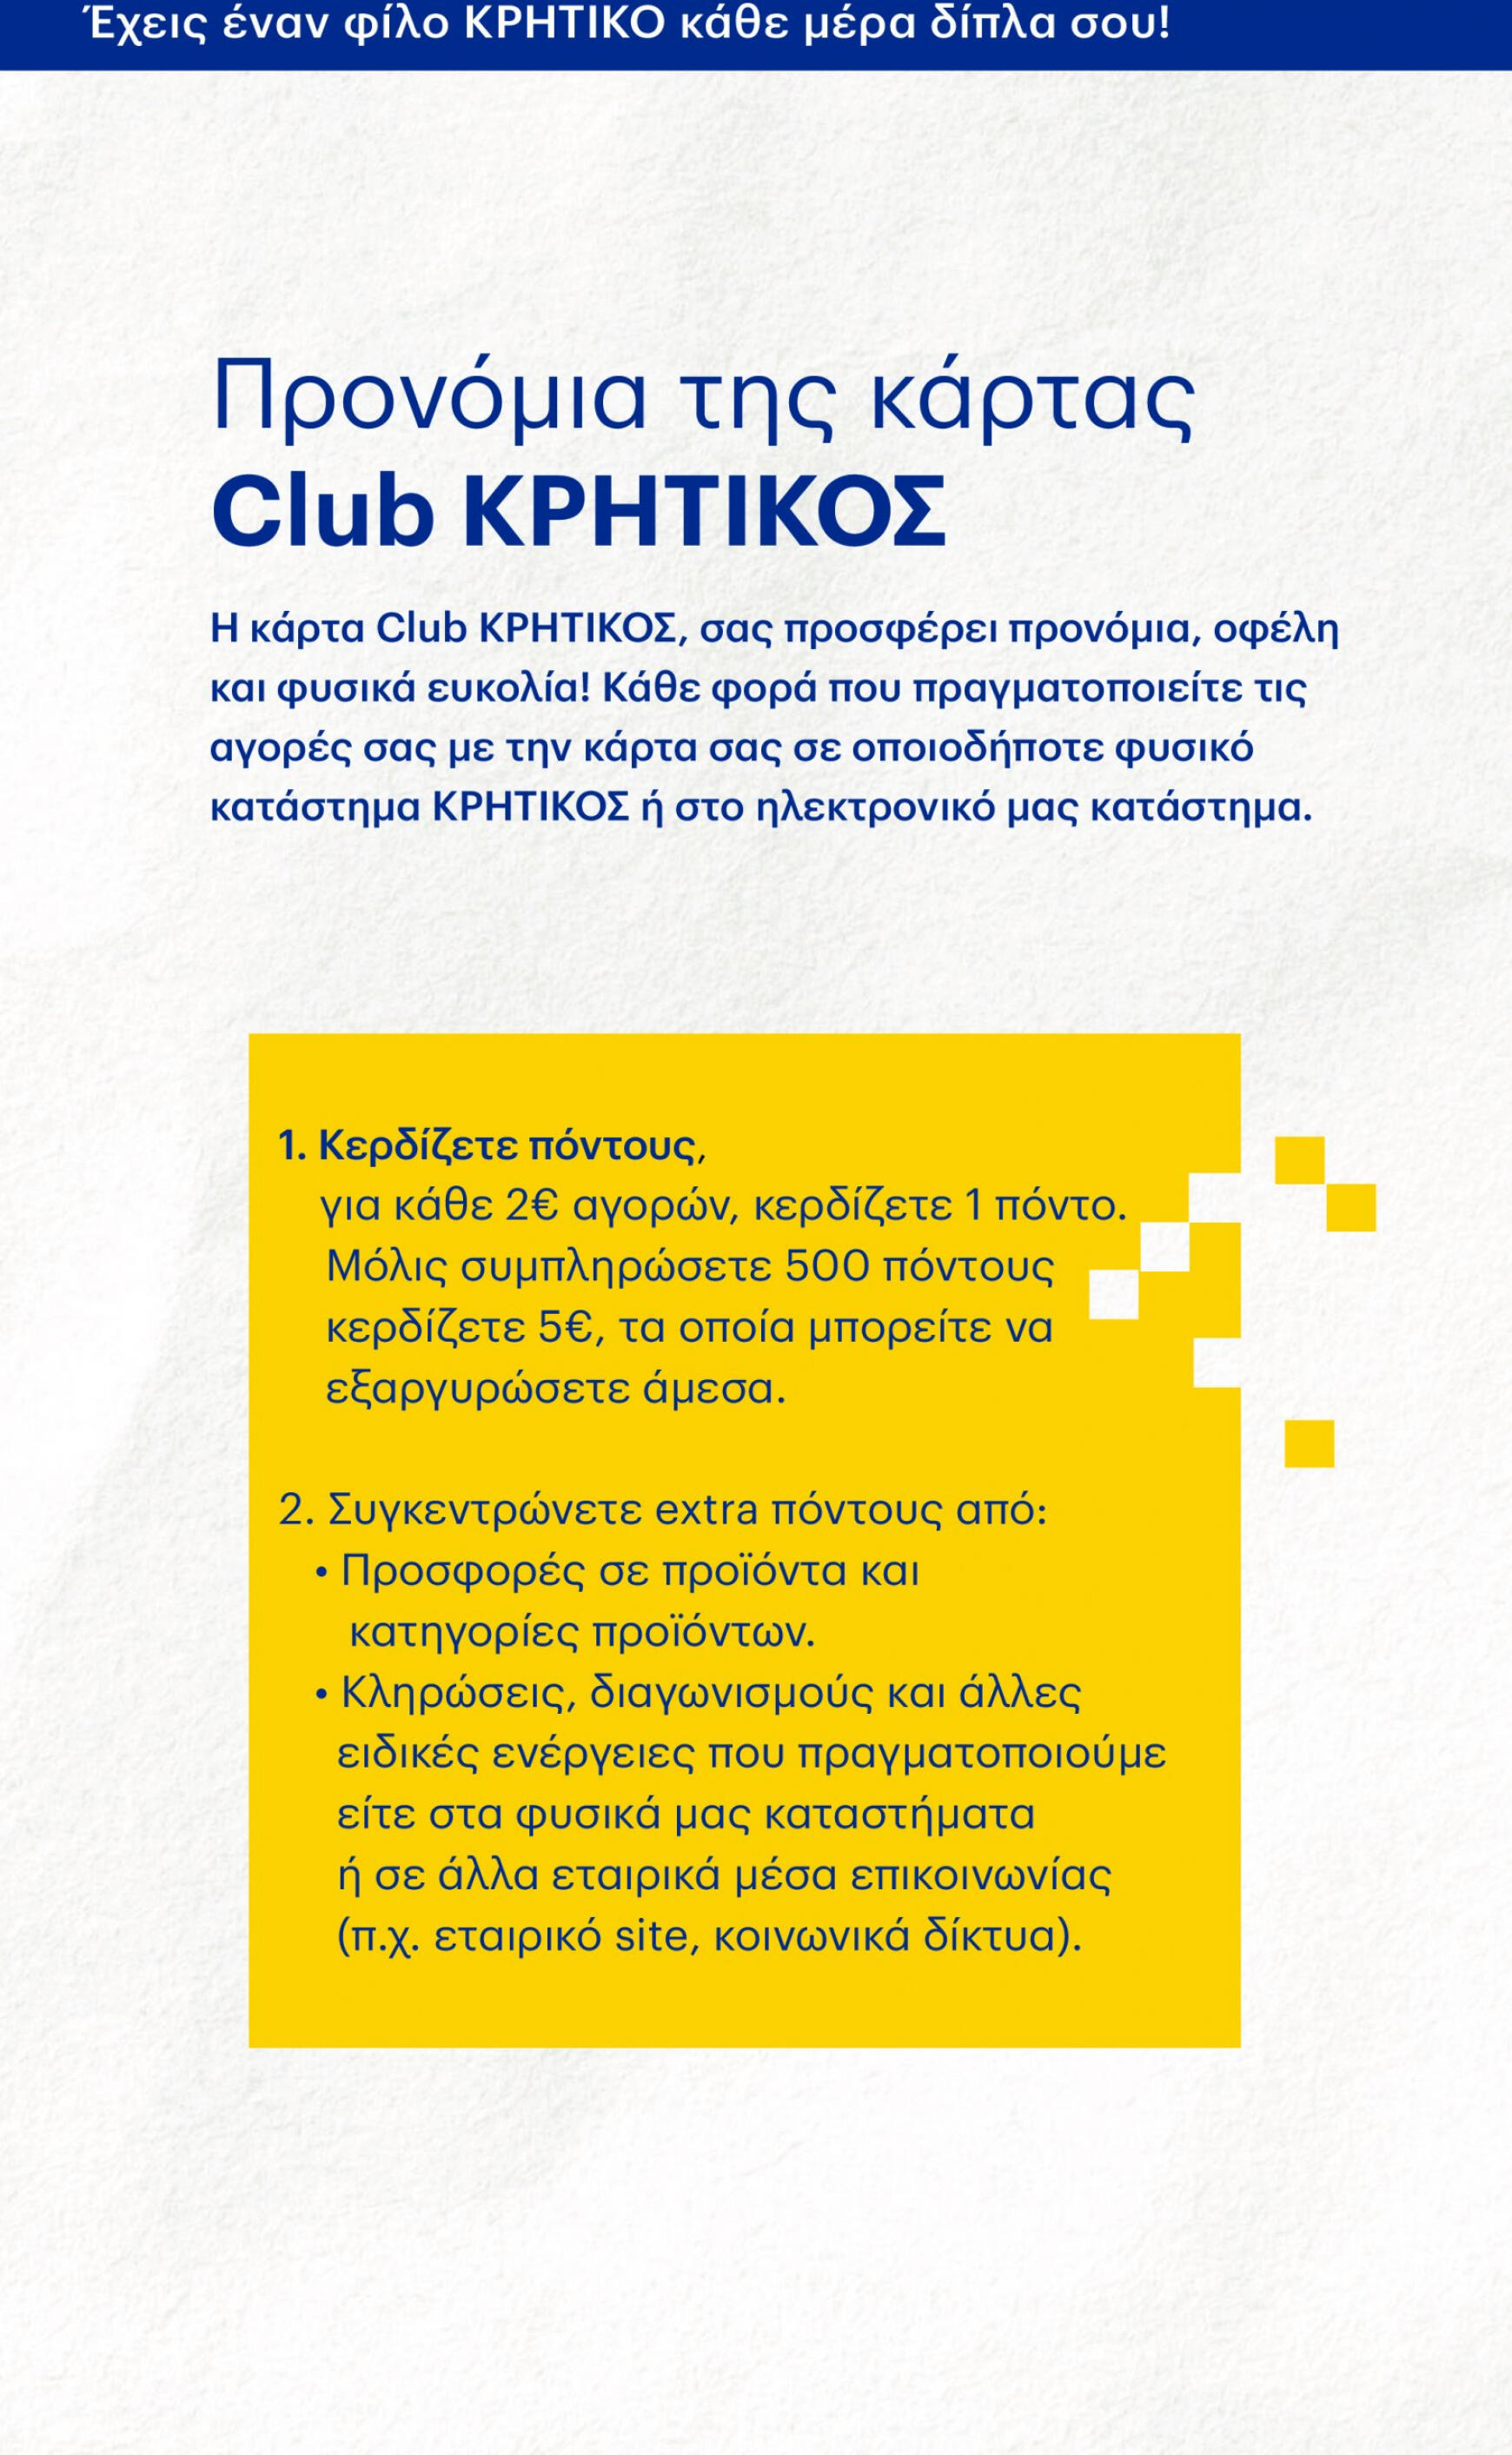 kritikos - Kritikos ισχύει από 07.12.2023 - page: 48